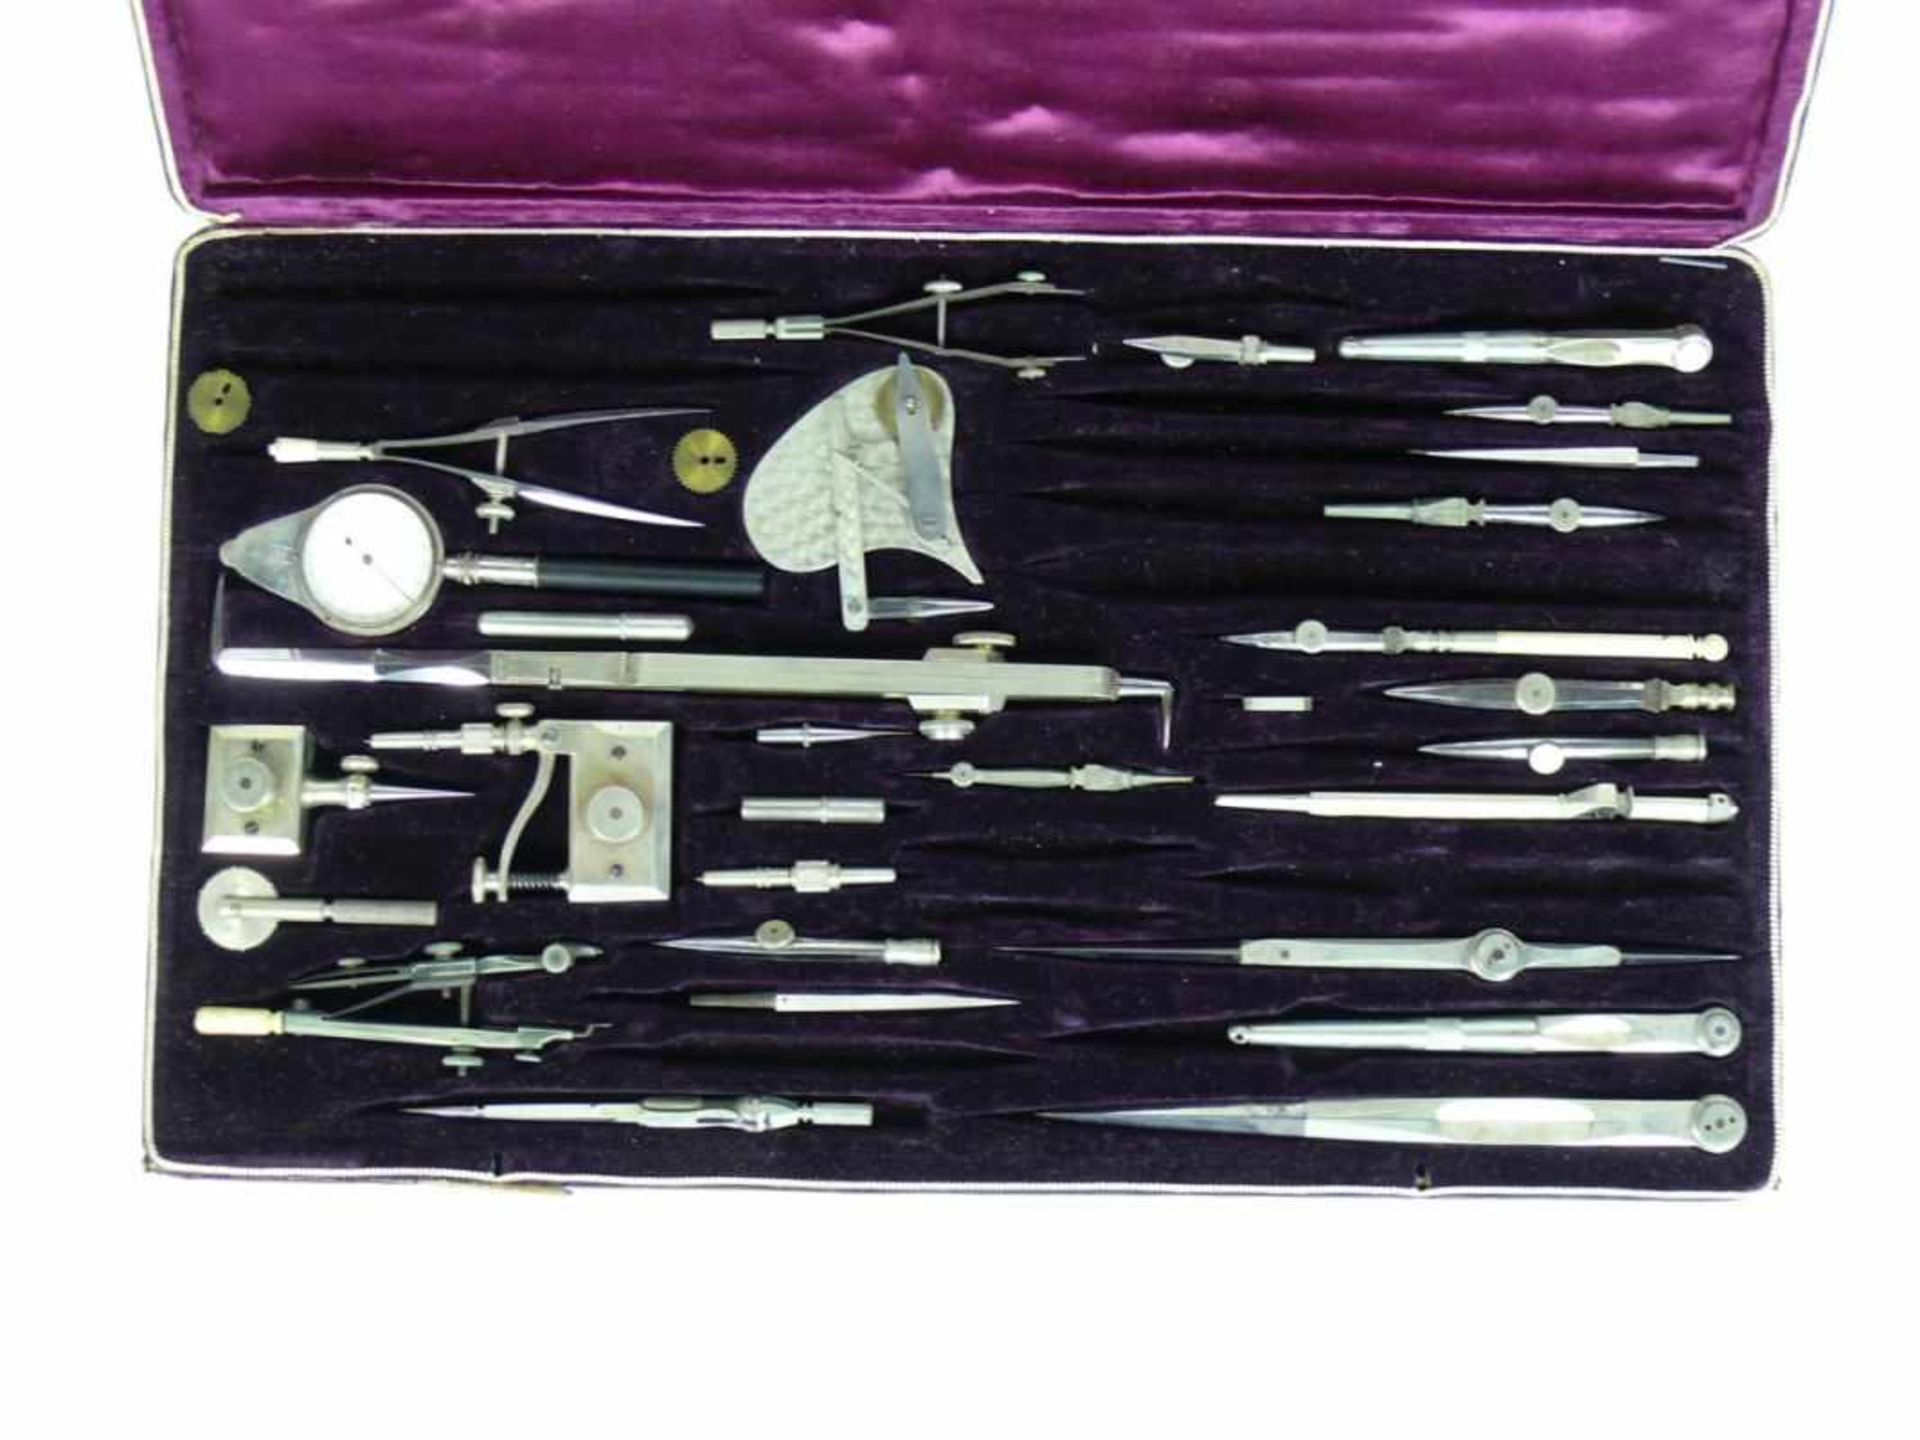 Messgeräte-Etui (1.H.20.Jh.)mit div. Zubehör (nicht komplett); 21 x 36 cm - Bild 2 aus 2